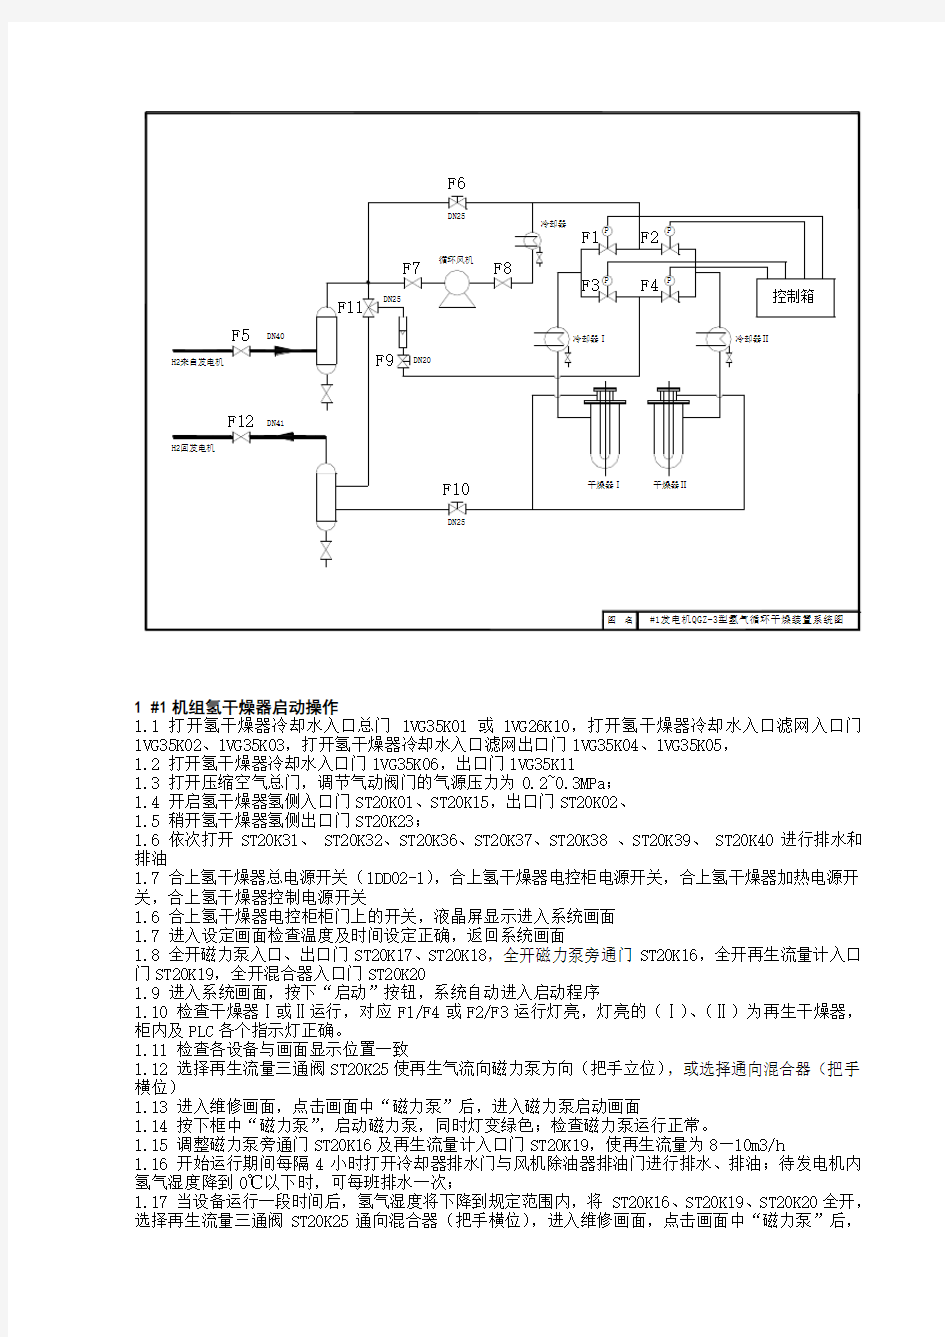 氢气干燥器系统图及说明